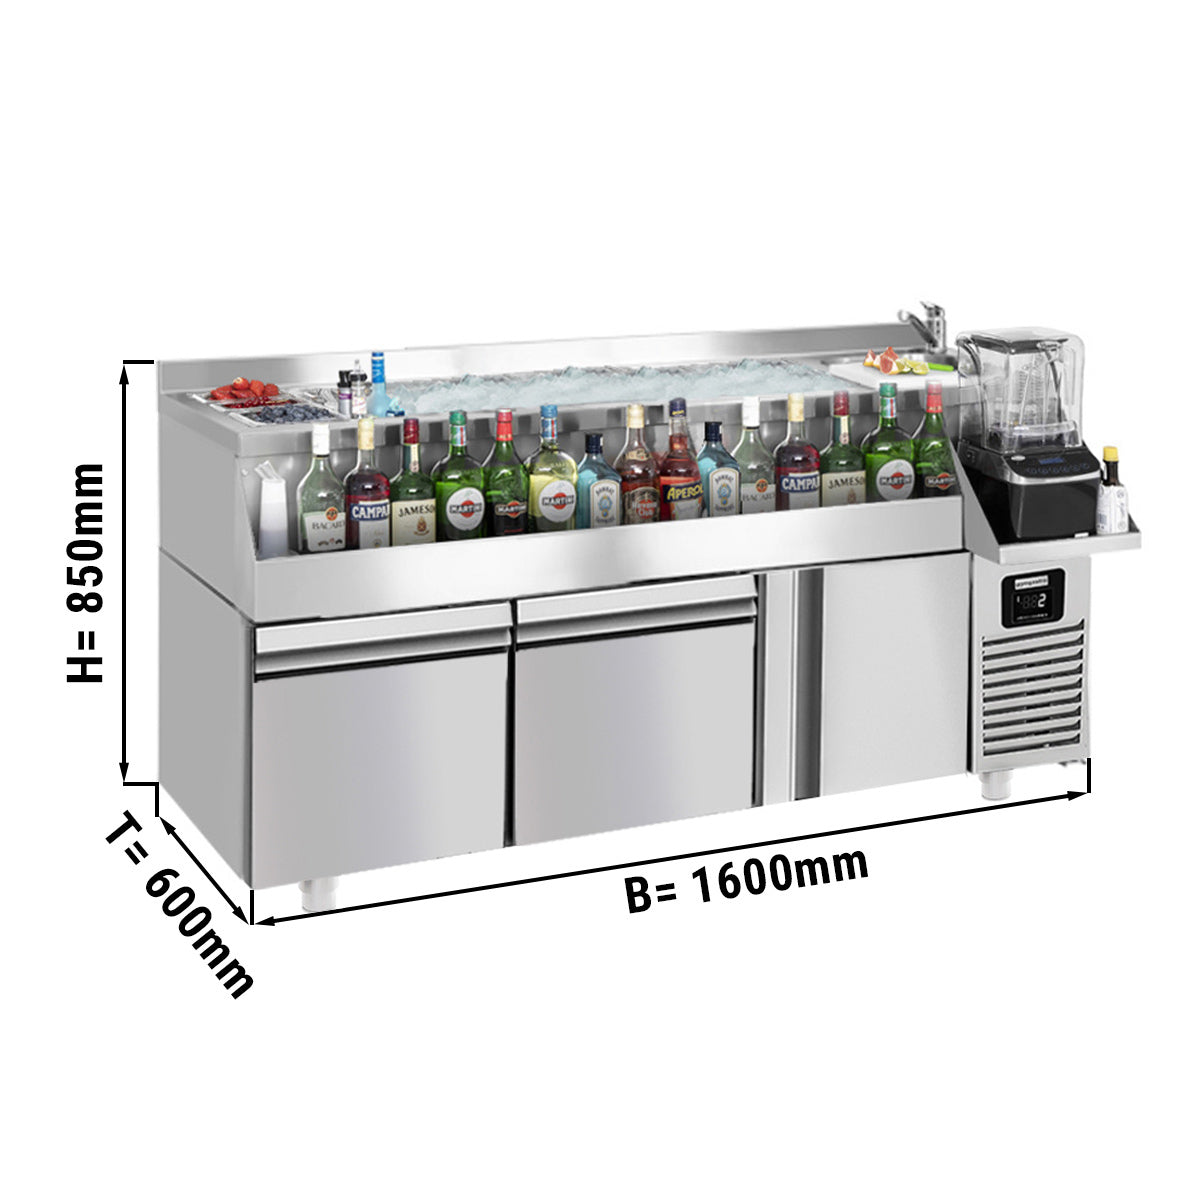 Хладилна маса за бар / напитки - 1,6 x 0,6 m - 235 литра - с 1 врата, 2 чекмеджета 1/1 и рафтове